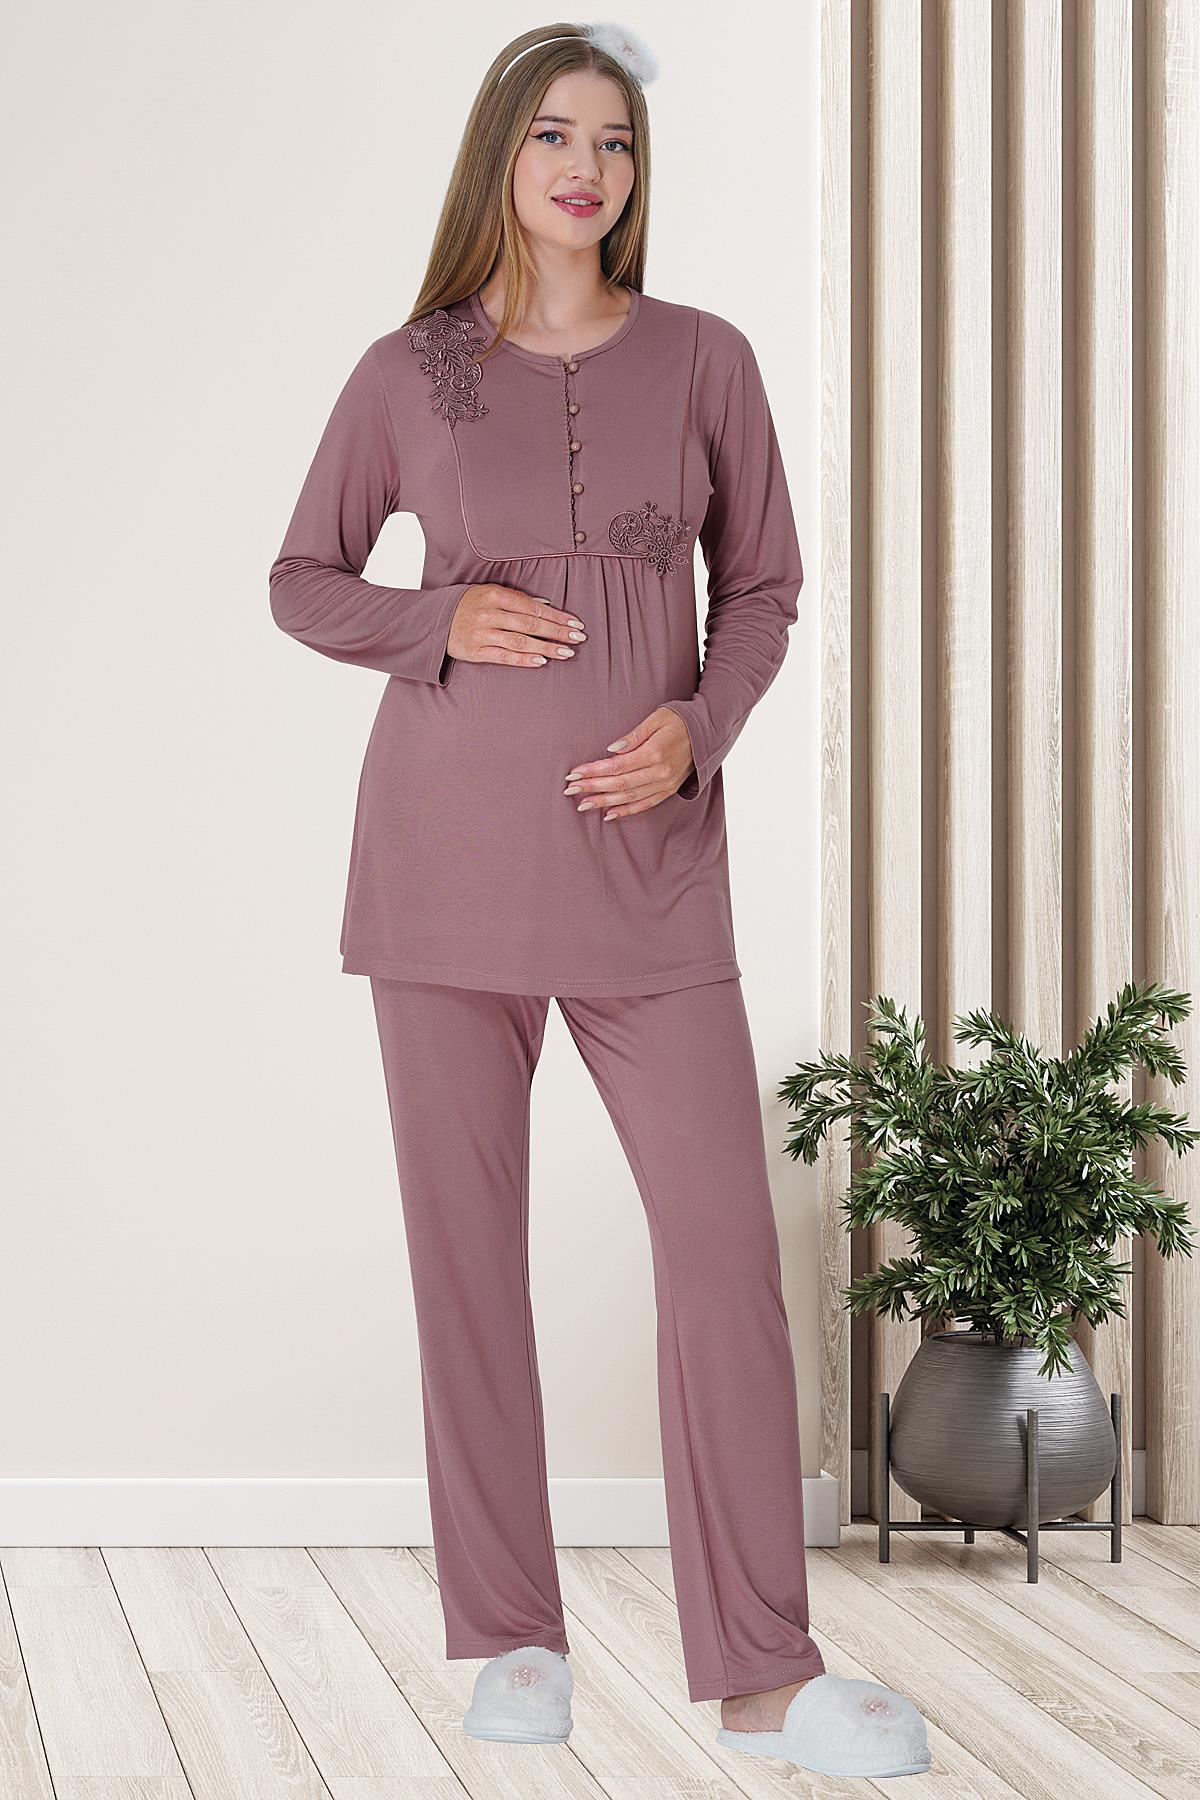 Embossed Lace Maternity & Nursing Pajamas Dried Rose - 5828